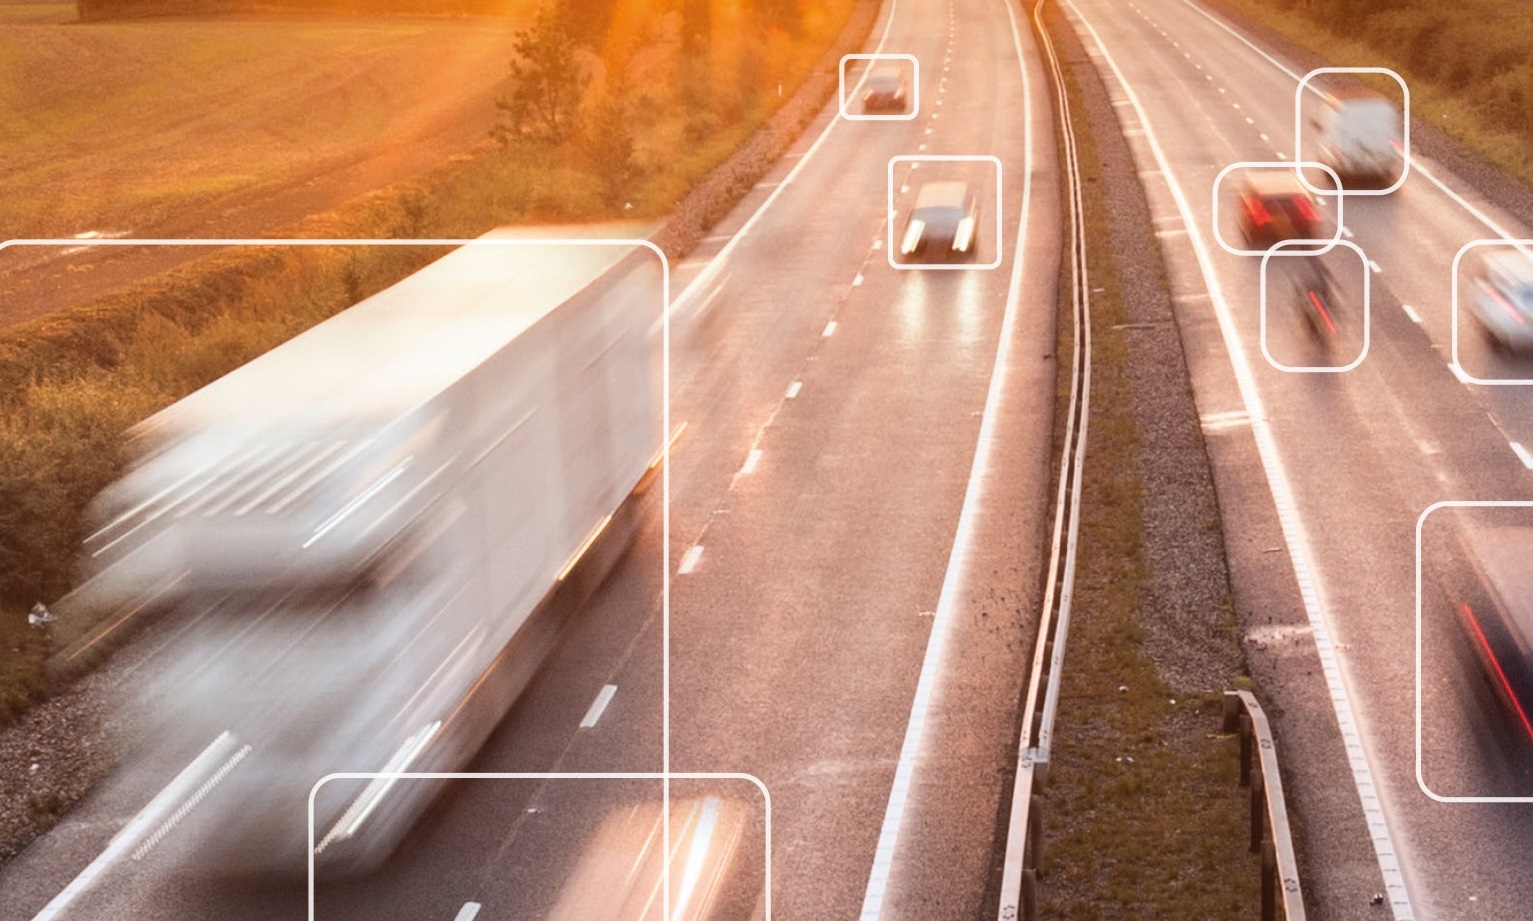 Adaptive Recognition ANPR vision technology multi-lane enforcement